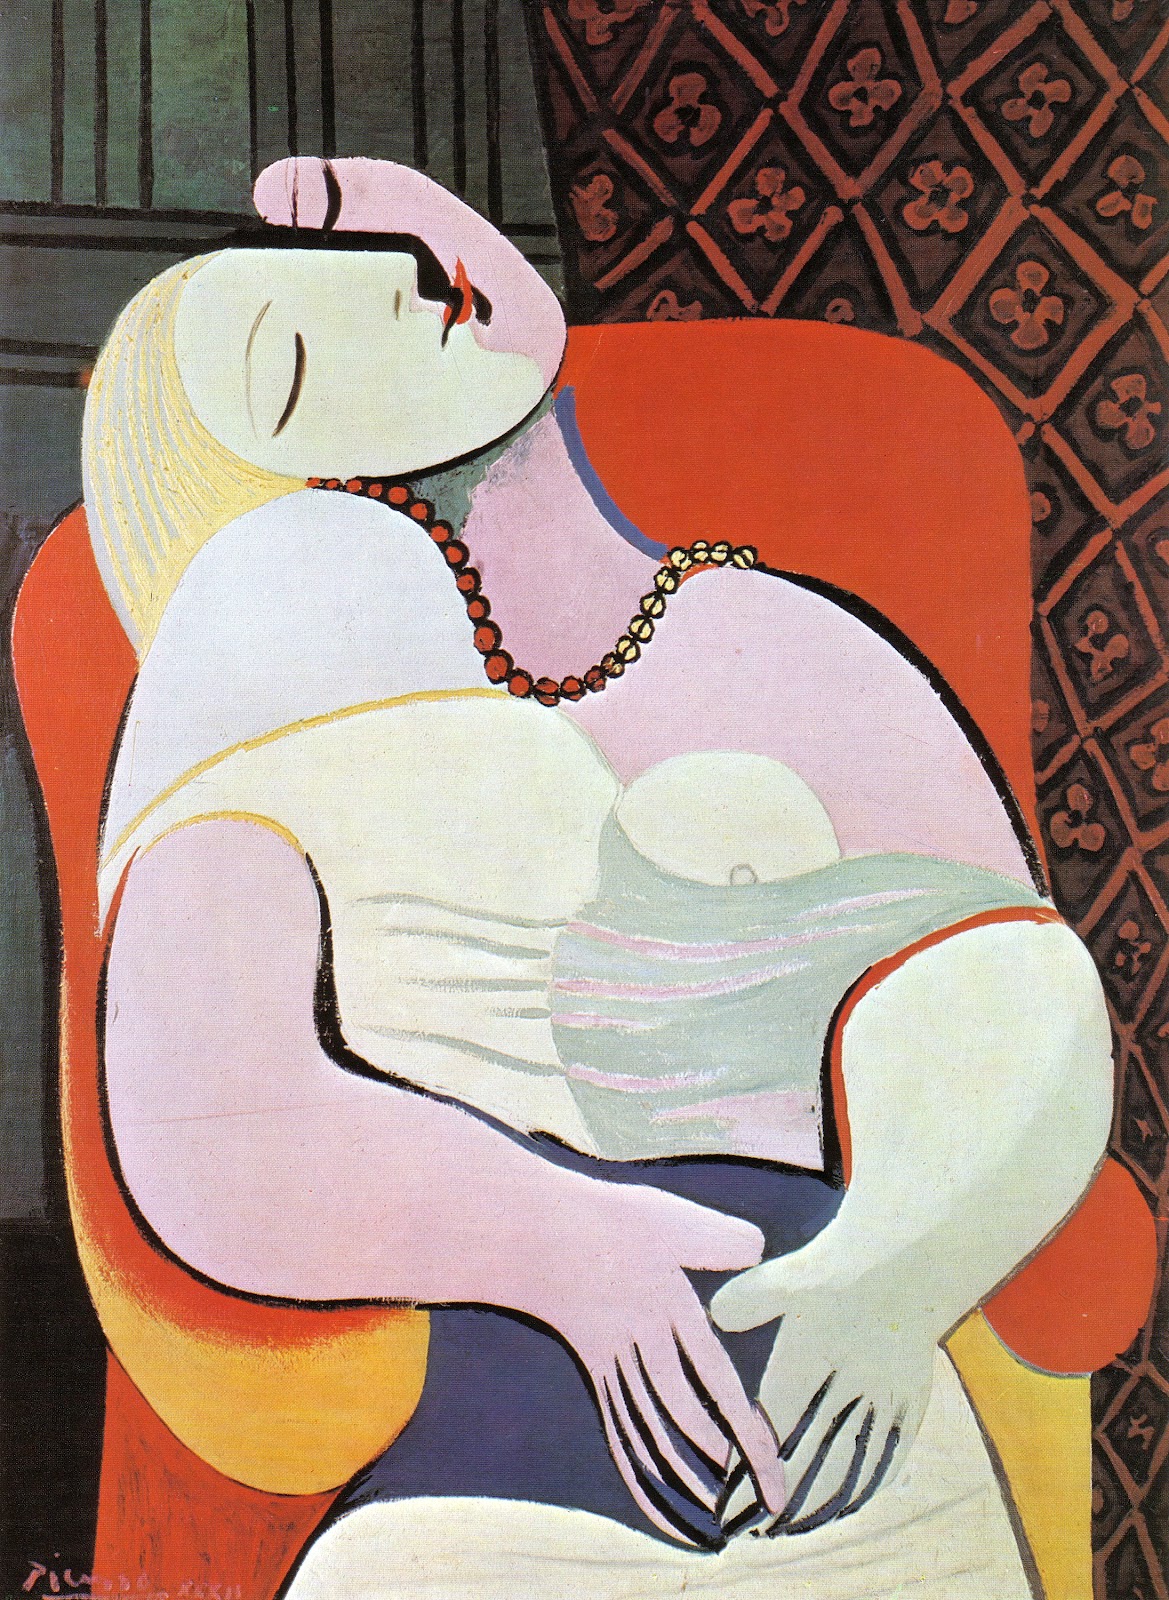 La Rêve (Sen) by Pablo Picasso - 1932 - 130 cm × 97 cm 